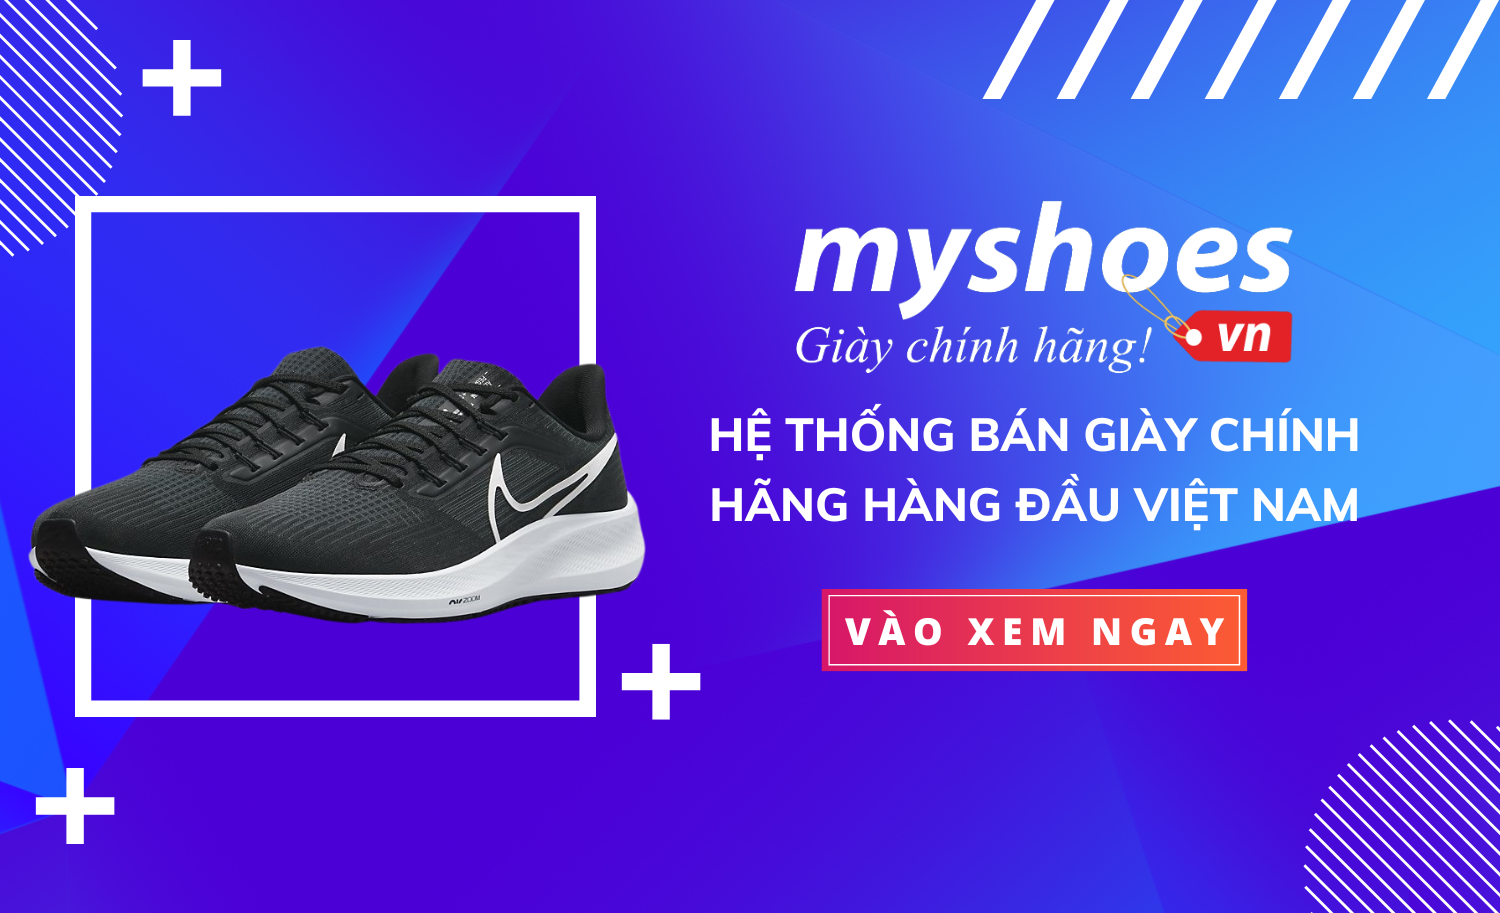 myshoes.vn giày chính hãng